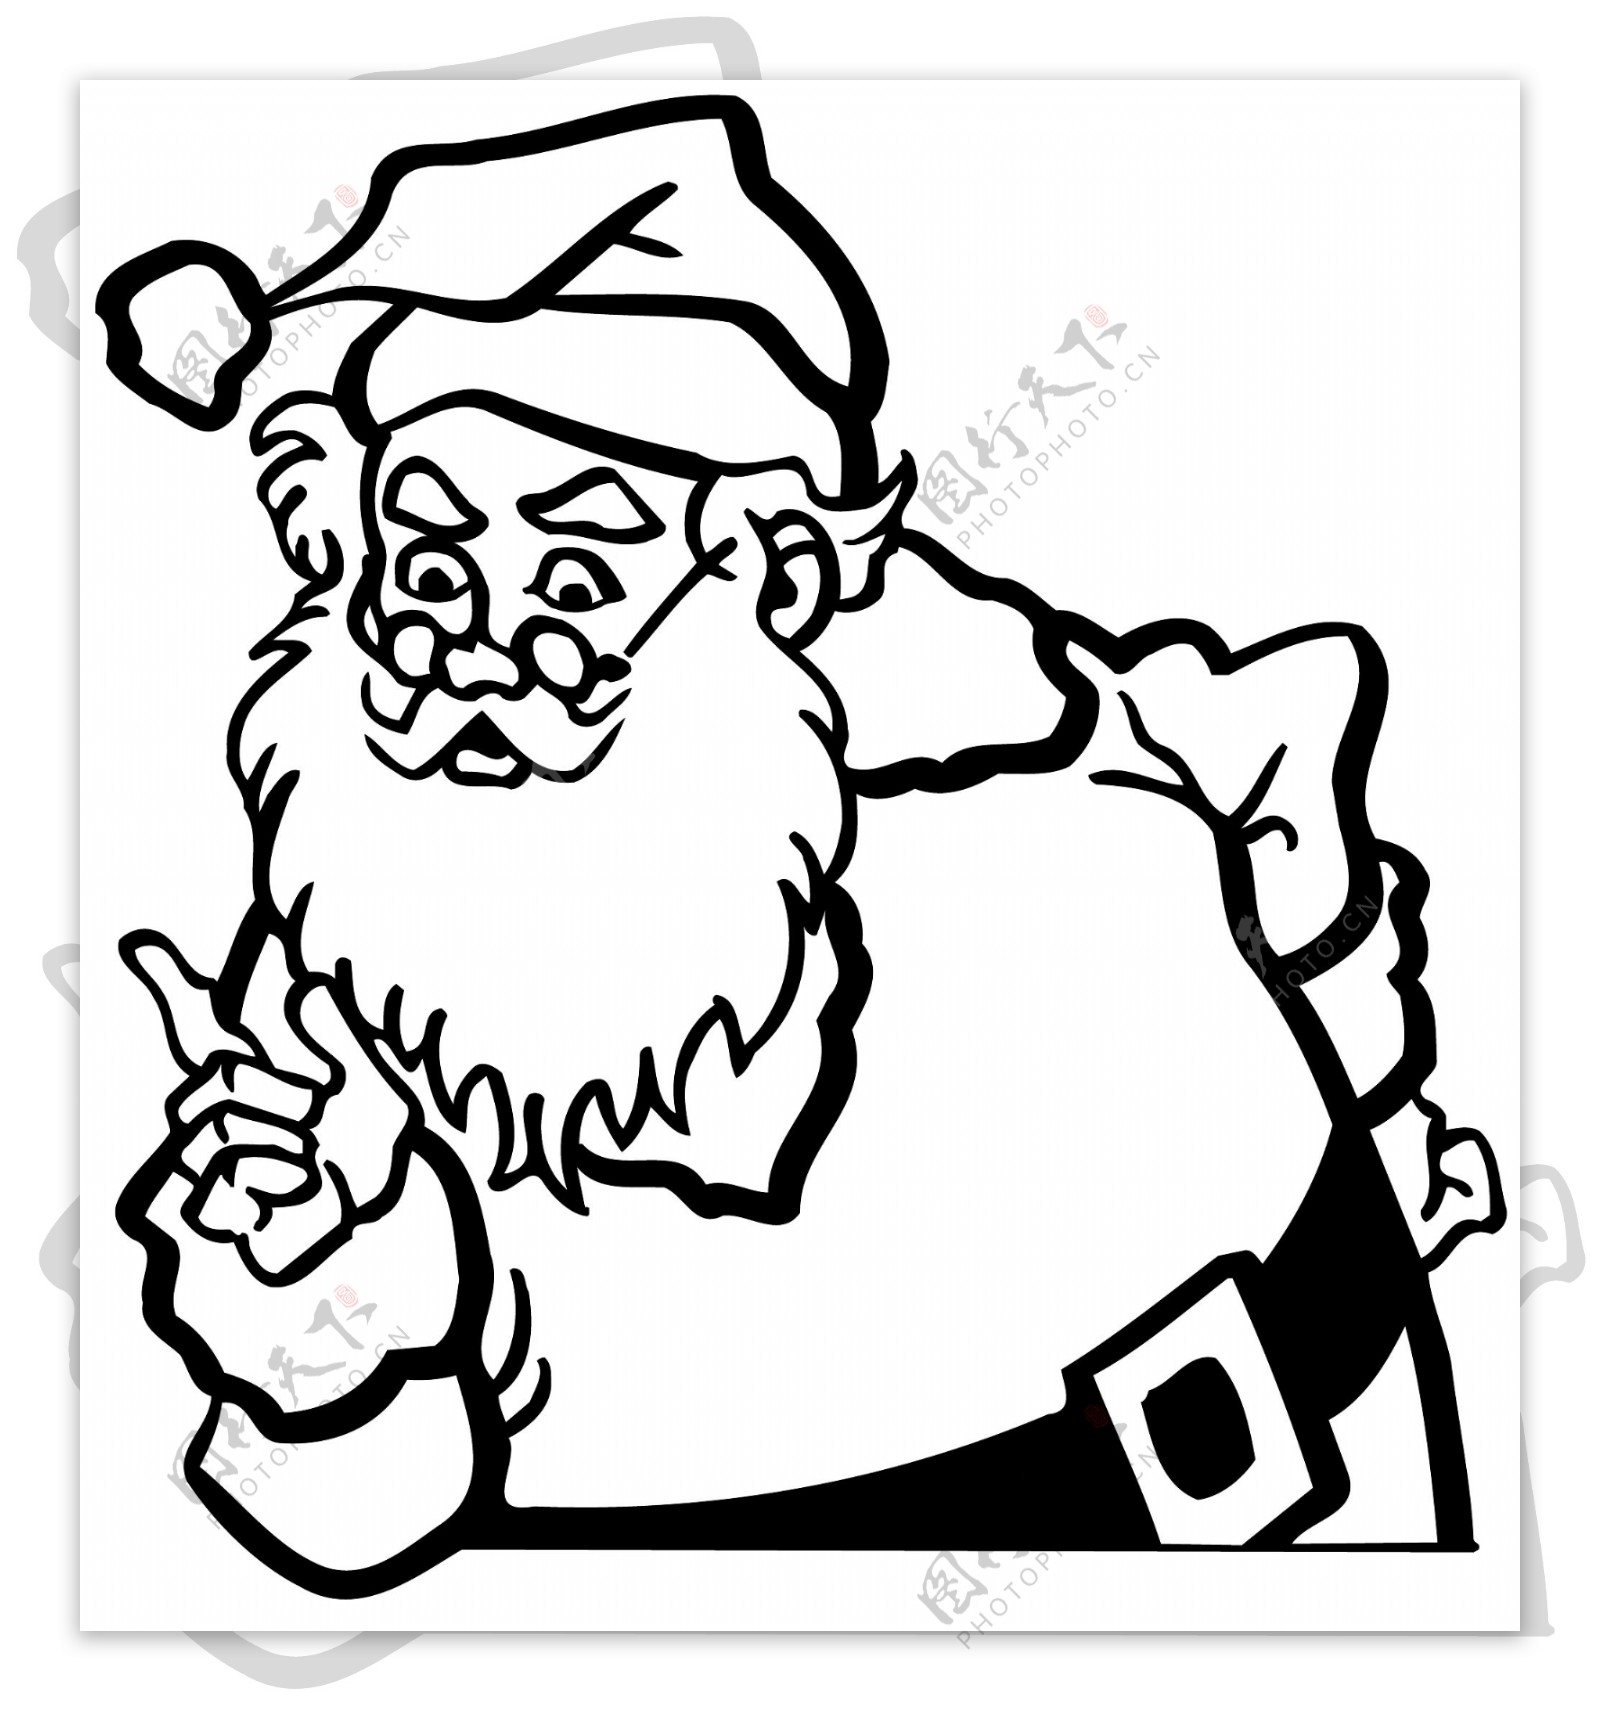 圣诞老人头像卡通头像矢量素材EPS格式0015